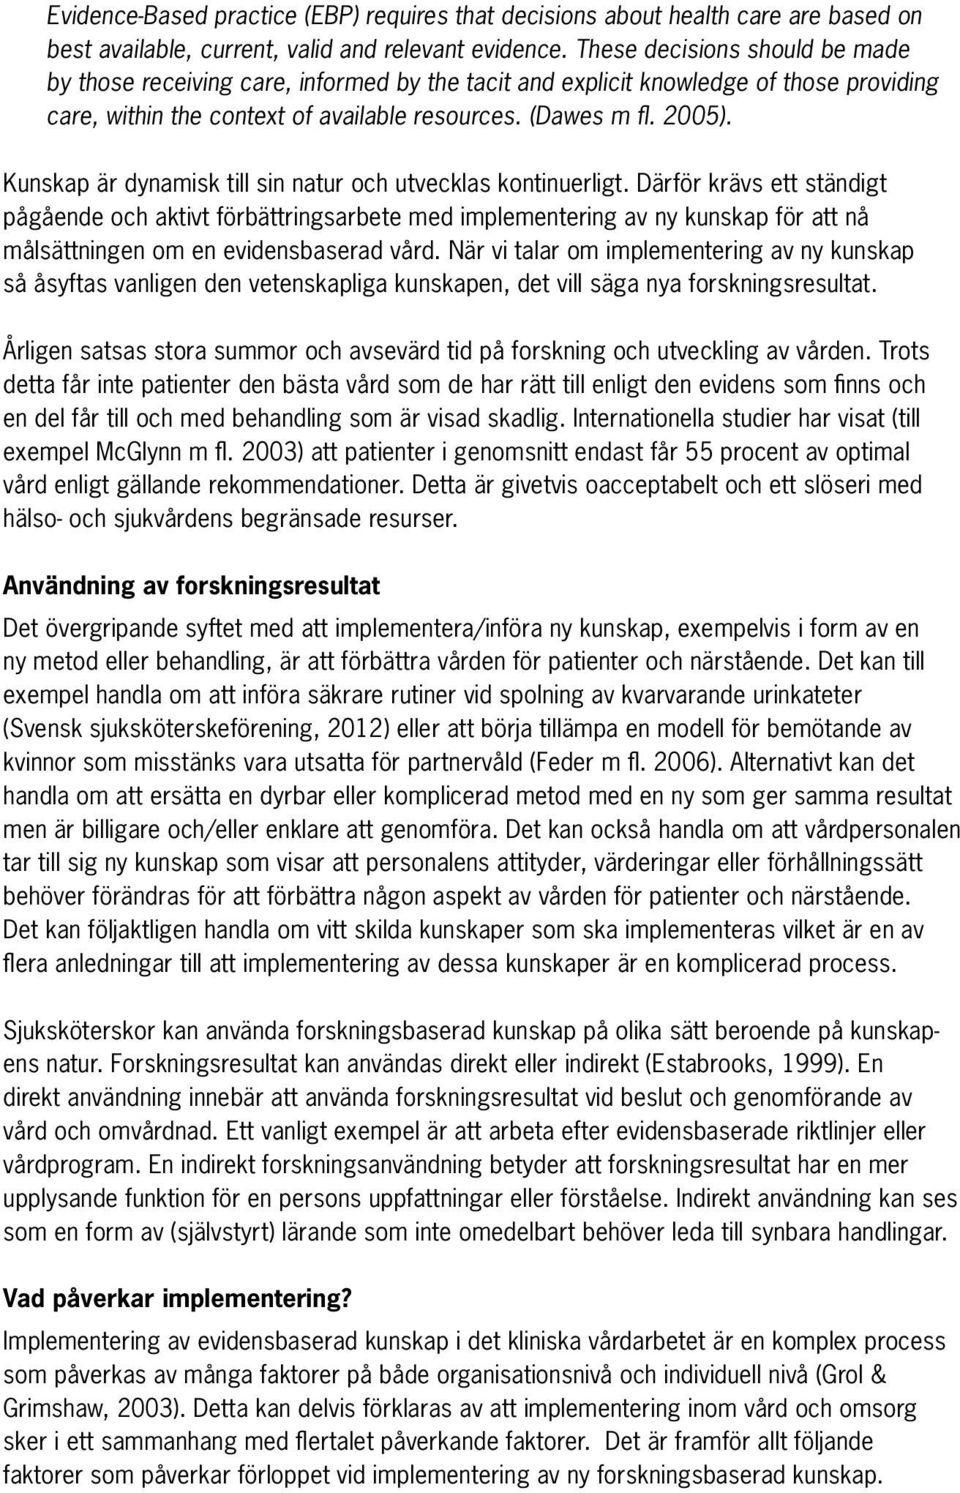 Svensk sjuksköterskeförening om - PDF Free Download